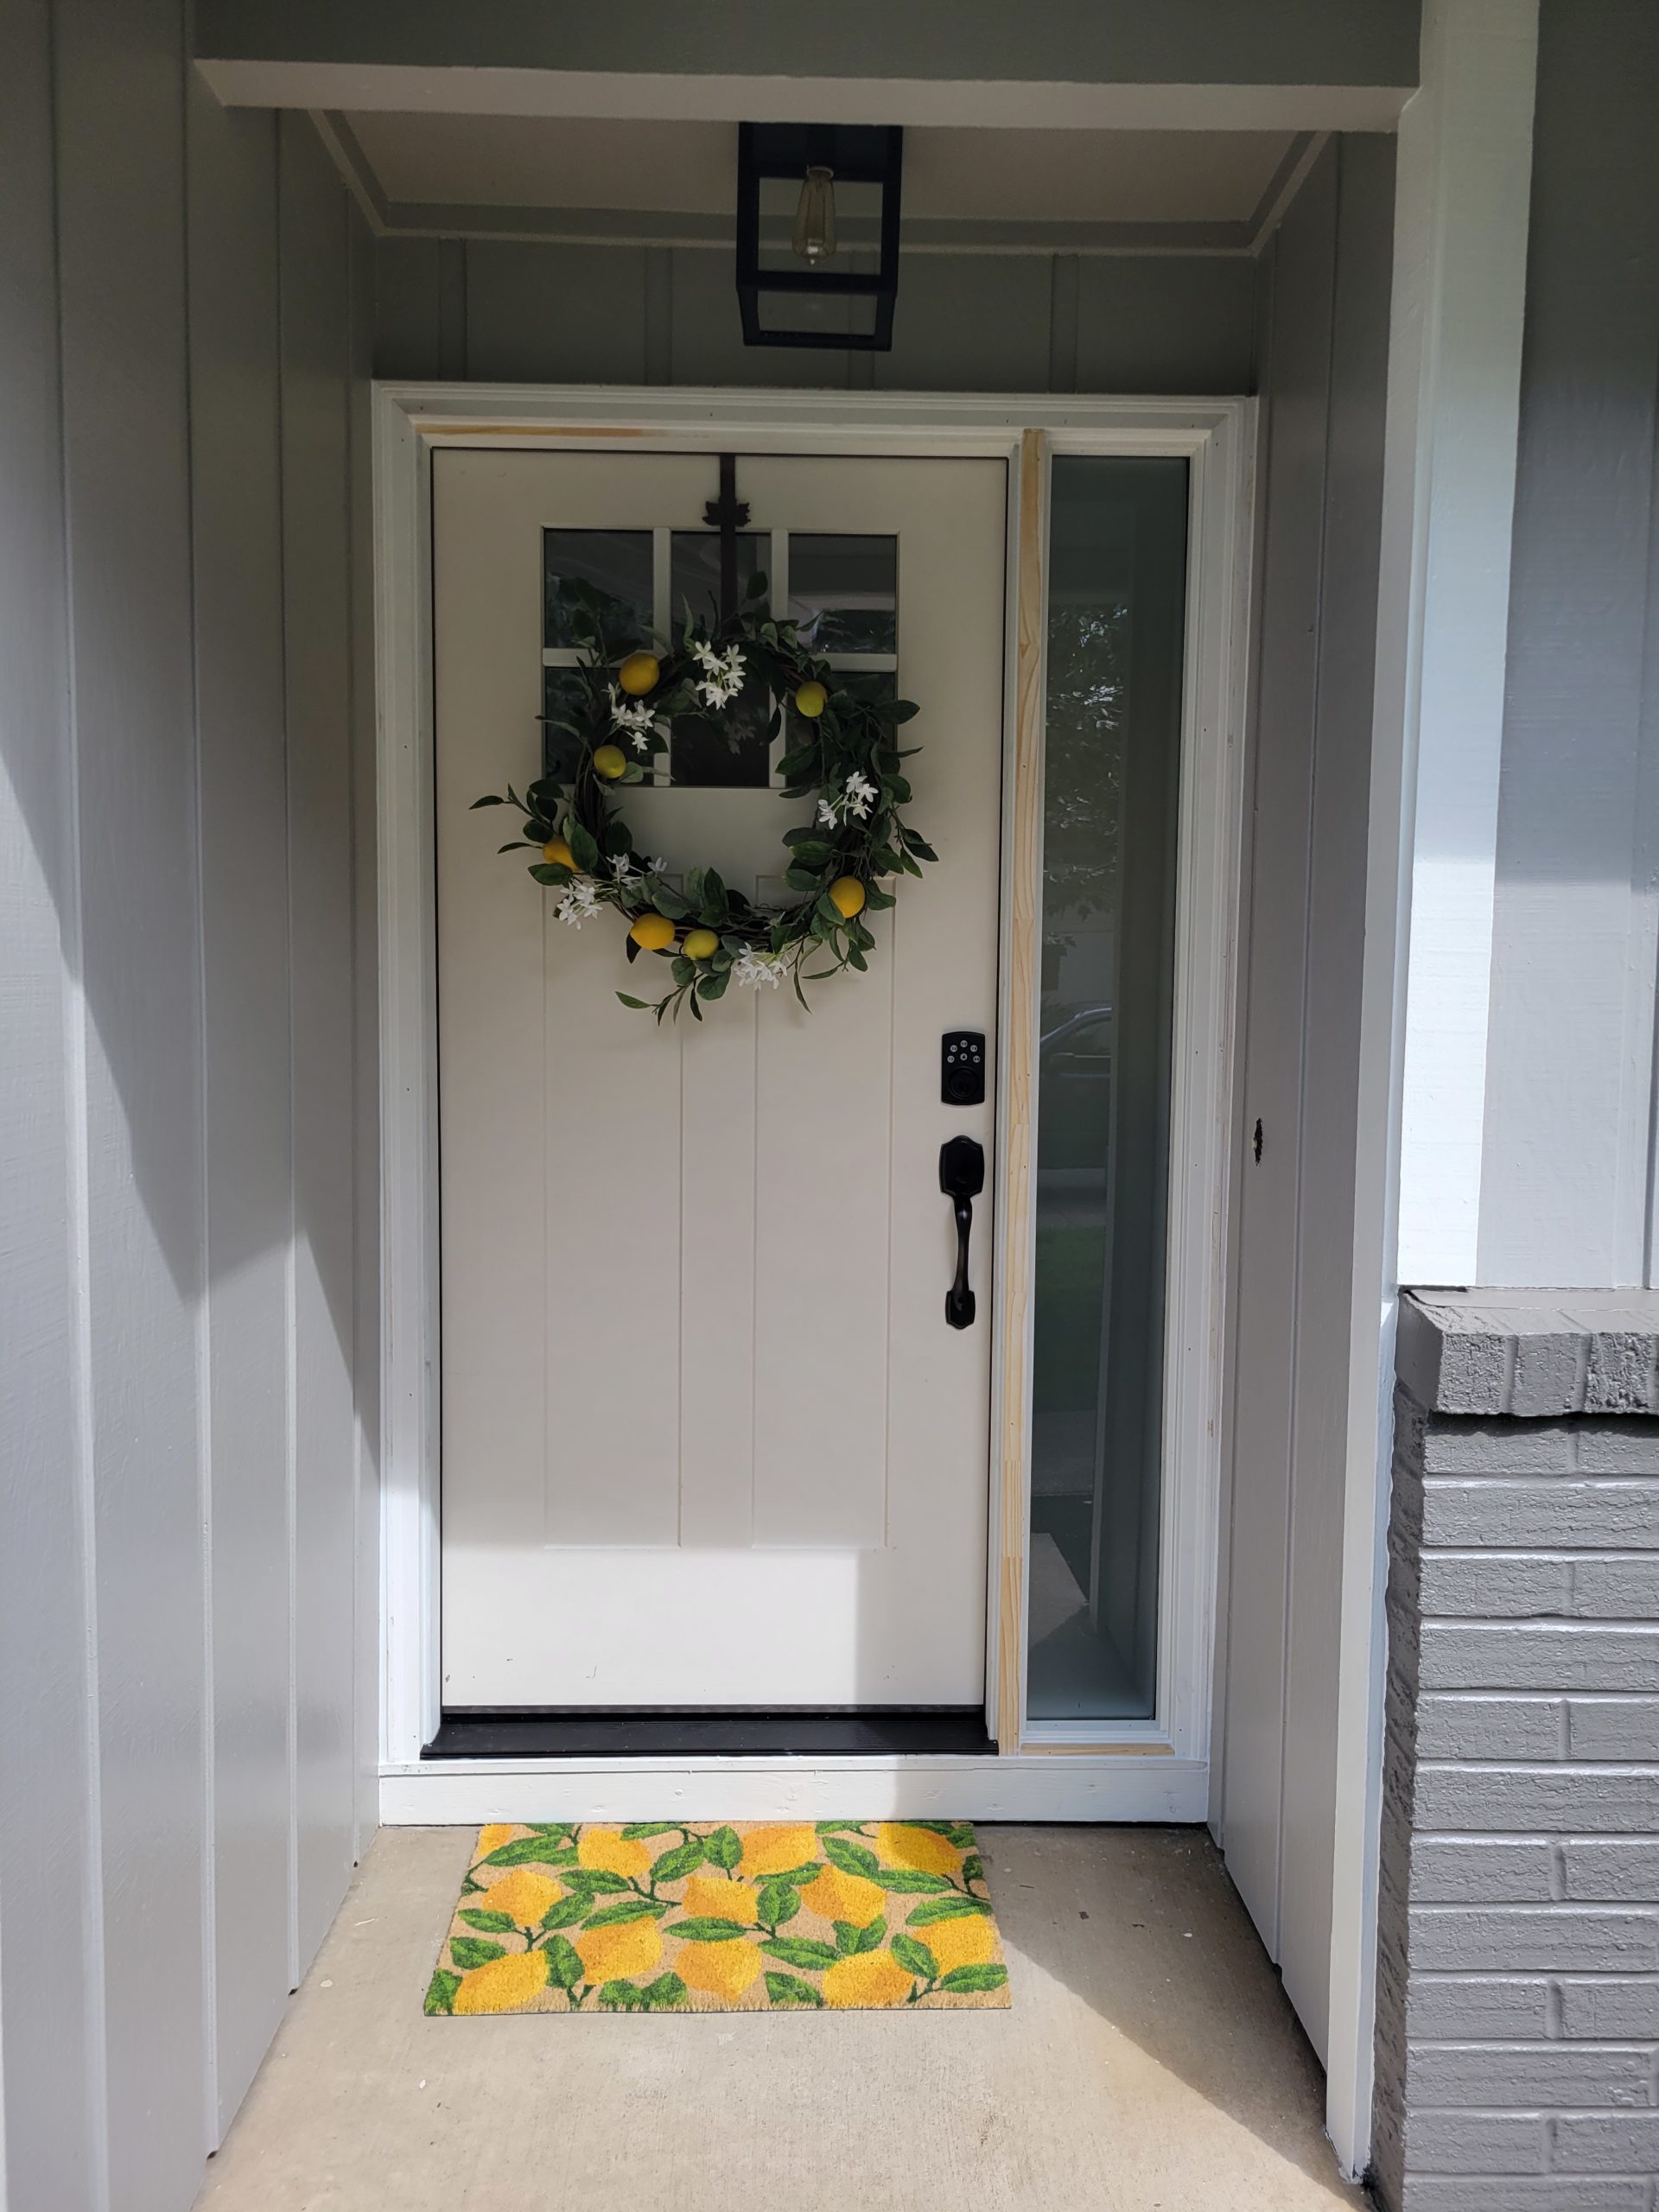 New Front Door with Lemon Themed wreath and doormat.